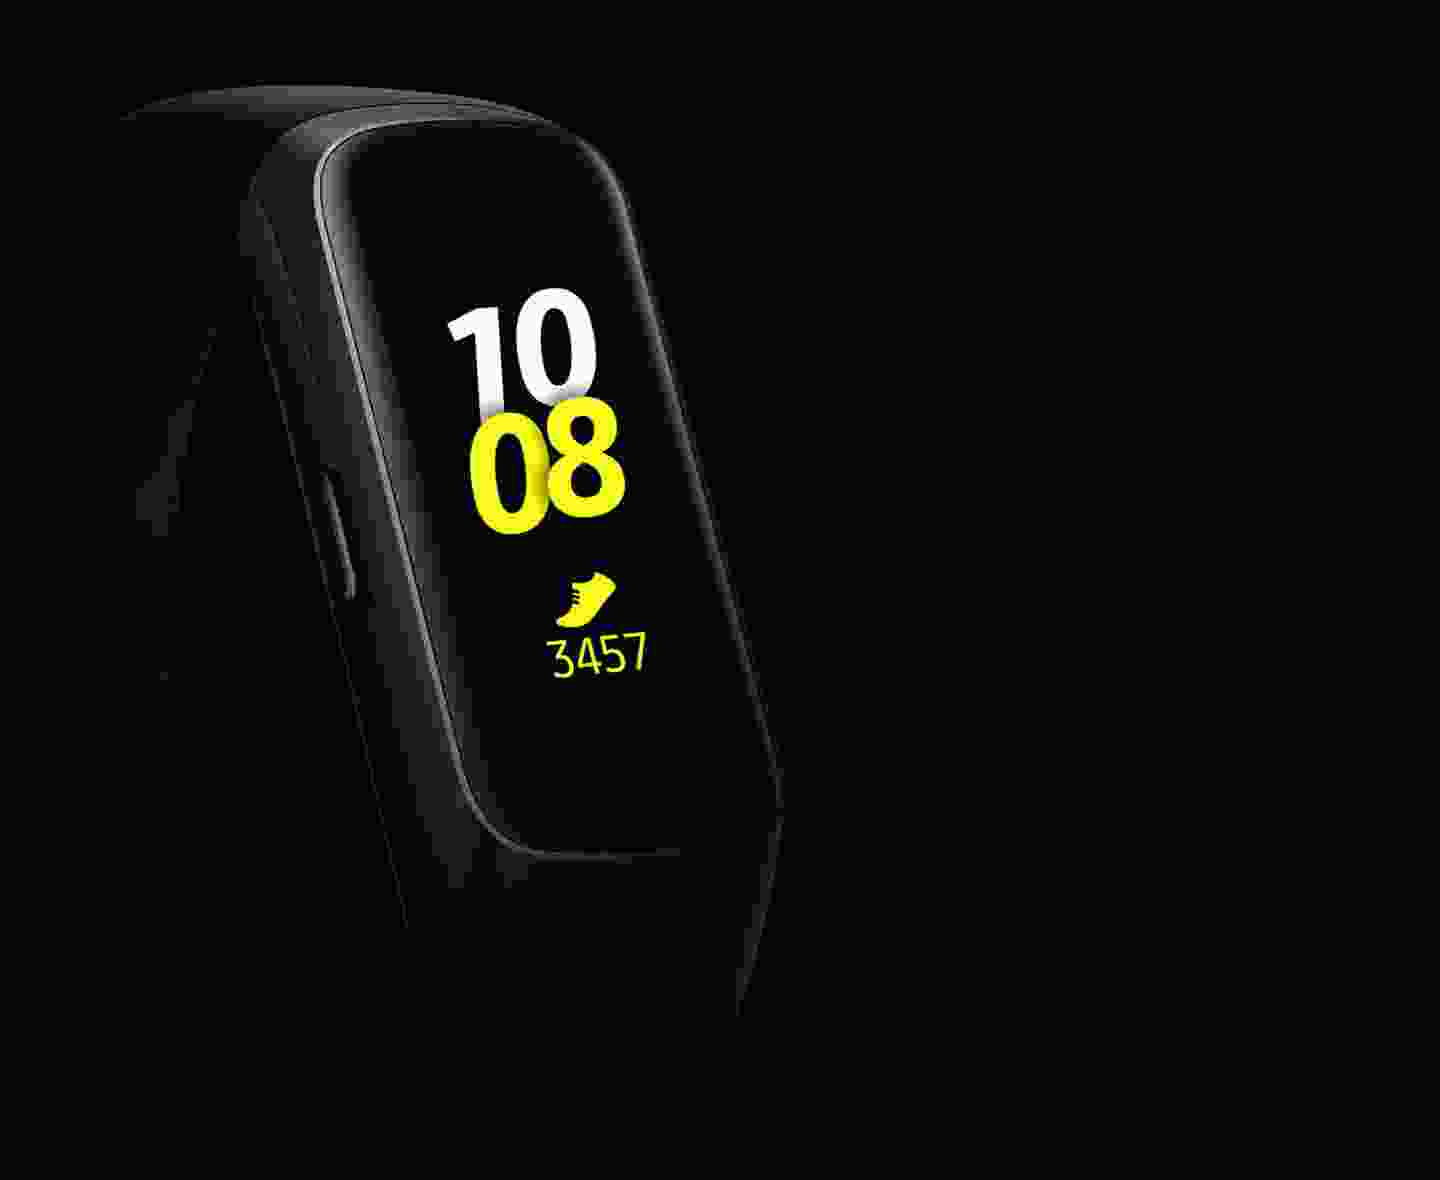 Bạn muốn sở hữu một chiếc đồng hồ thông minh chất lượng và chống nước tuyệt đối? Hãy khám phá Samsung Gear Fit, sản phẩm đạt chuẩn quân đội với khả năng chống nước 5ATM tuyệt đối!